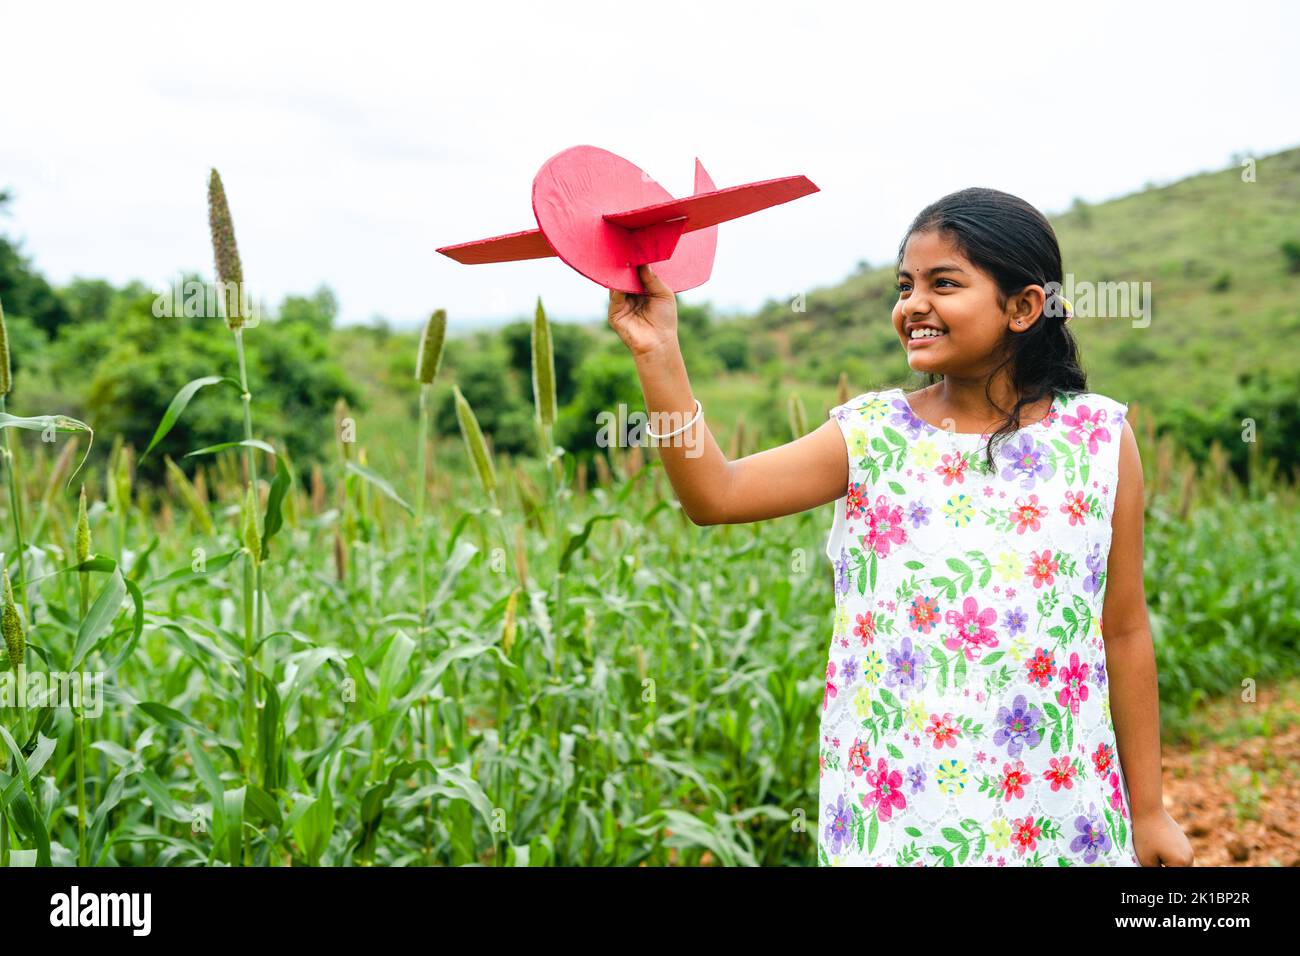 Tracking shot di felice ragazza sorridente bambino giocare con l'aereo durante le vacanze - concetto di libertà, sogno d'infanzia e obiettivo futuro. Foto Stock